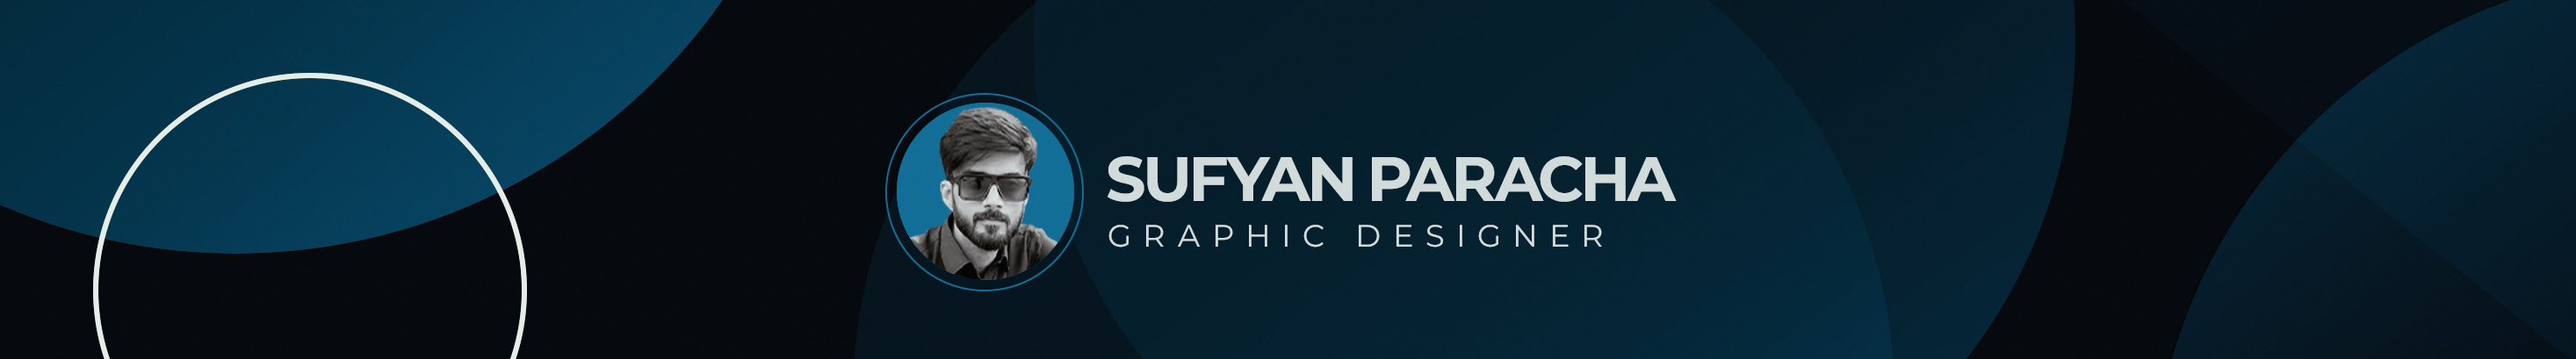 Banner de perfil de Sufyan Paracha